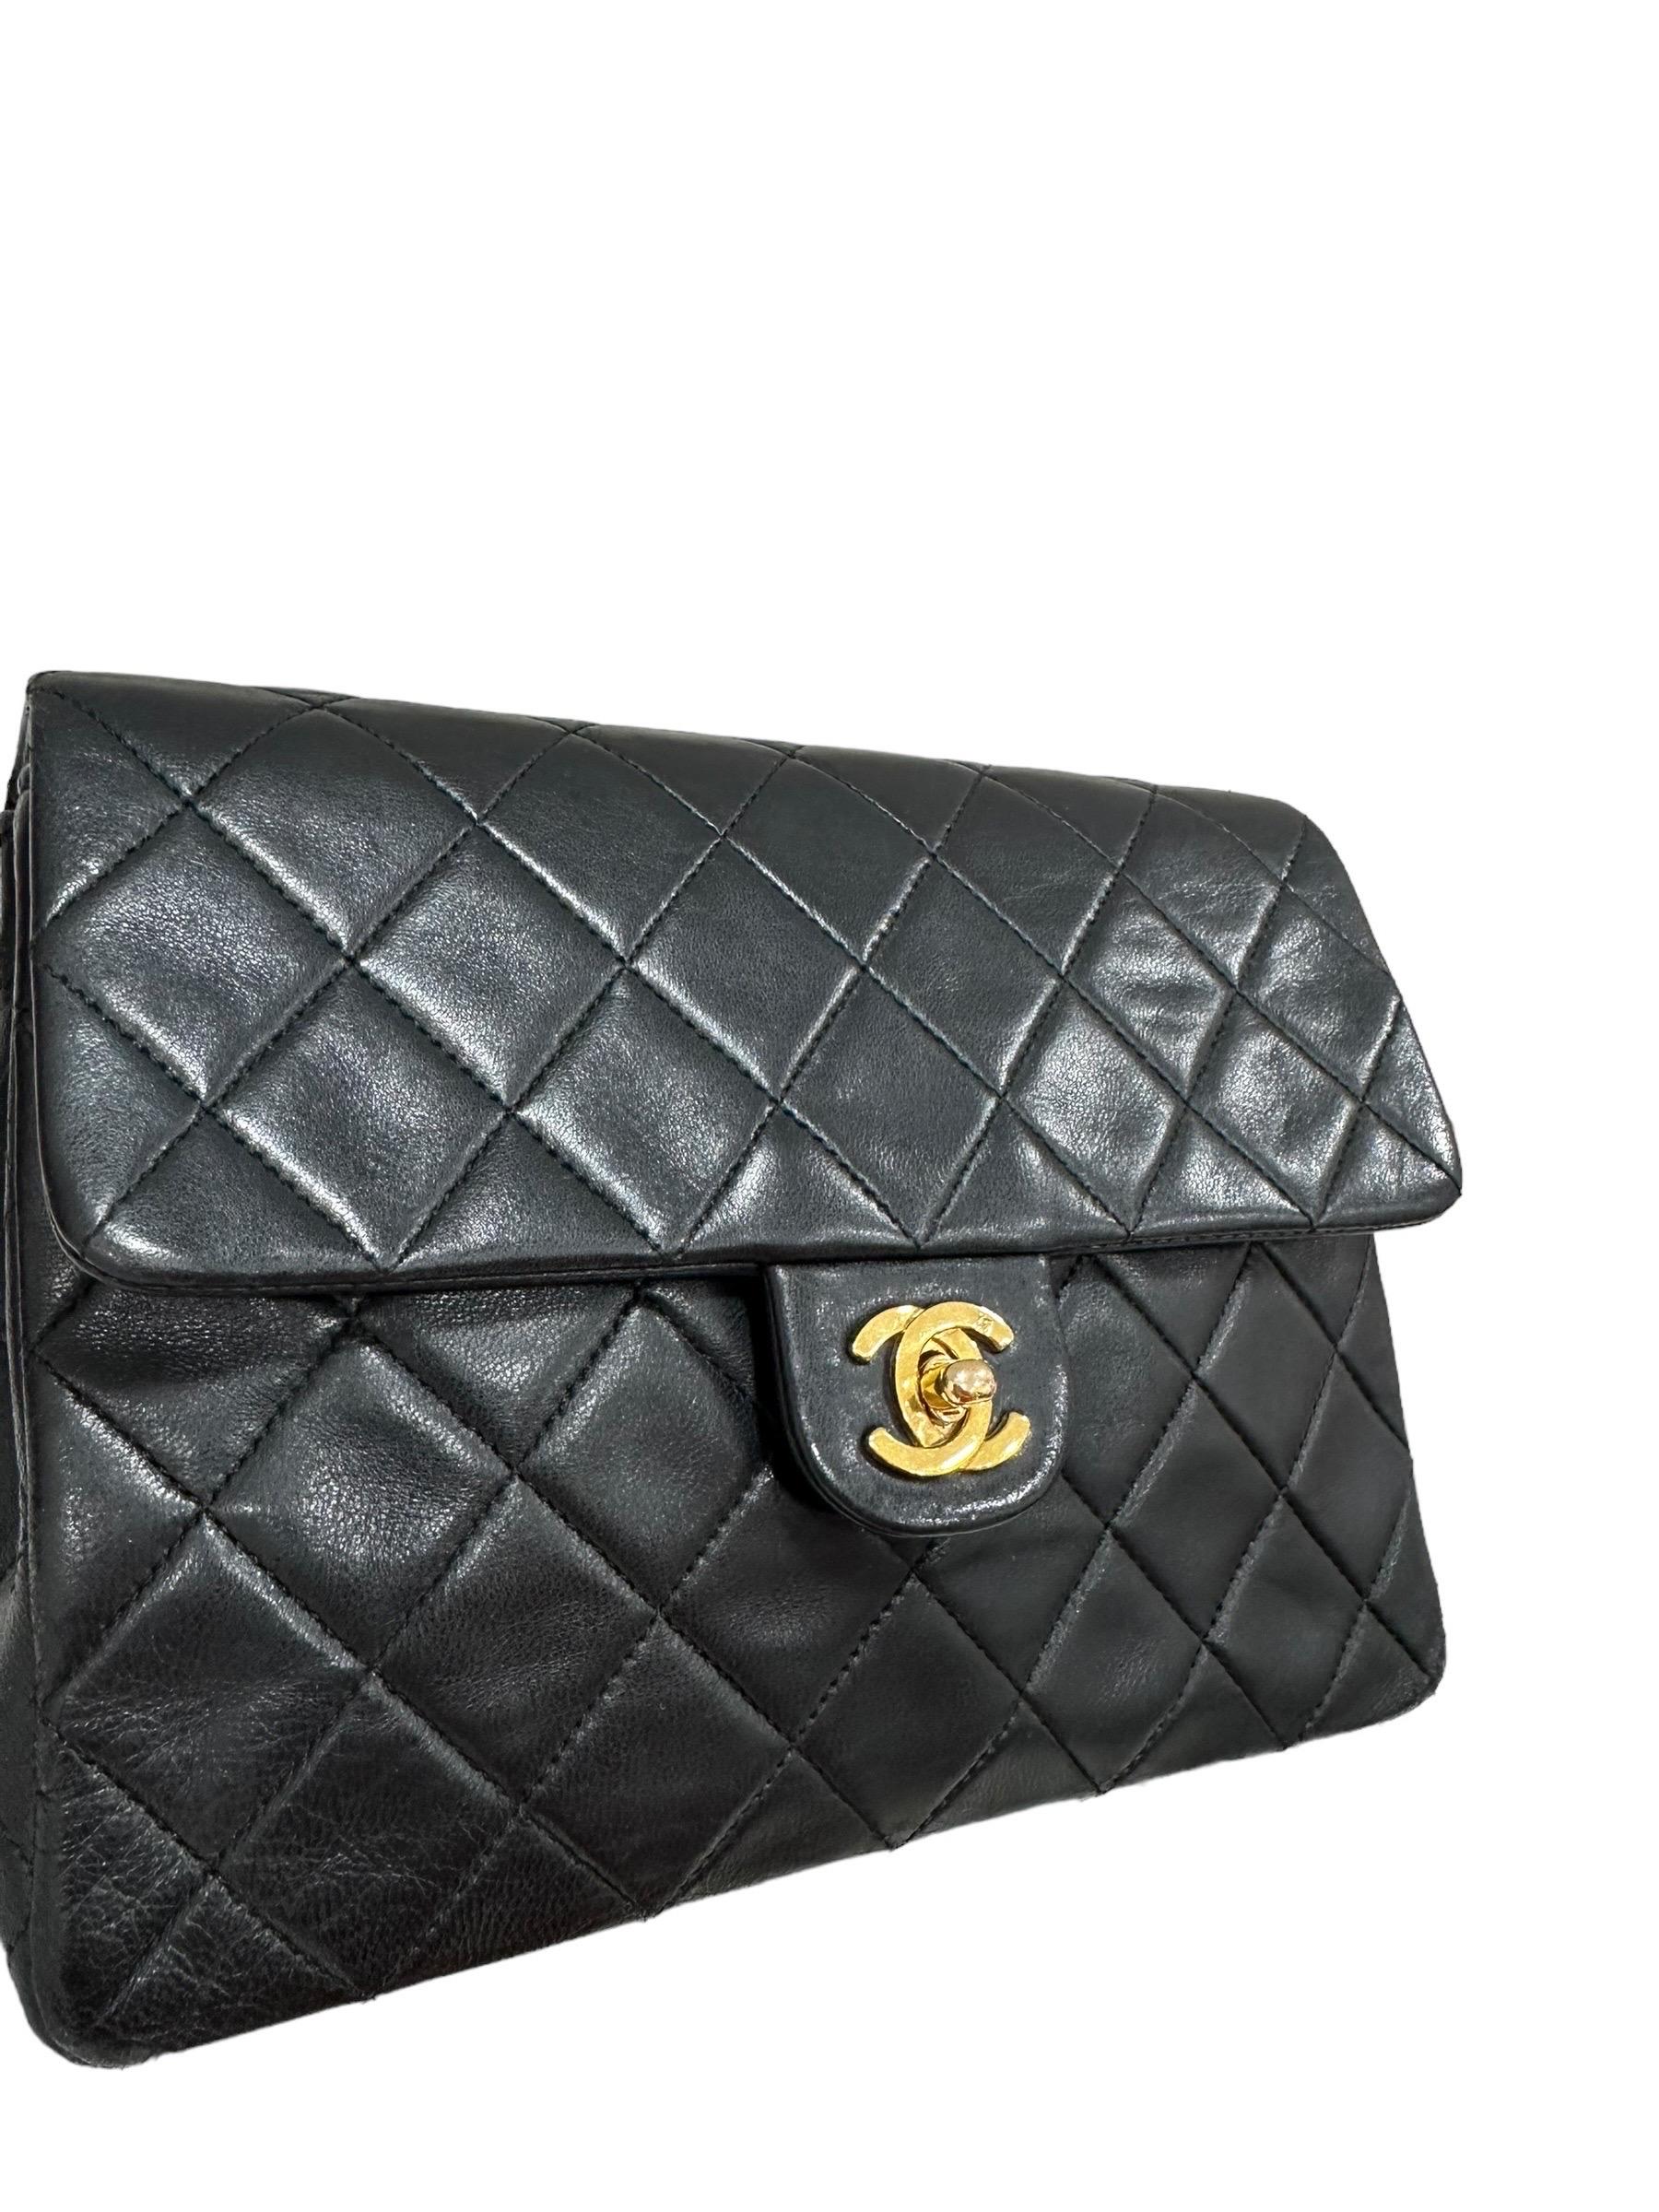 Borsa firmata Chanel, modello Timeless Mini Flap Vintage, realizzata in pelle liscia nera con hardware dorati. Dotata di una patta con chiusura a girello logo CC, internamente rivestita in pelle liscia bordeaux, capiente per l'essenziale. Muni d'une